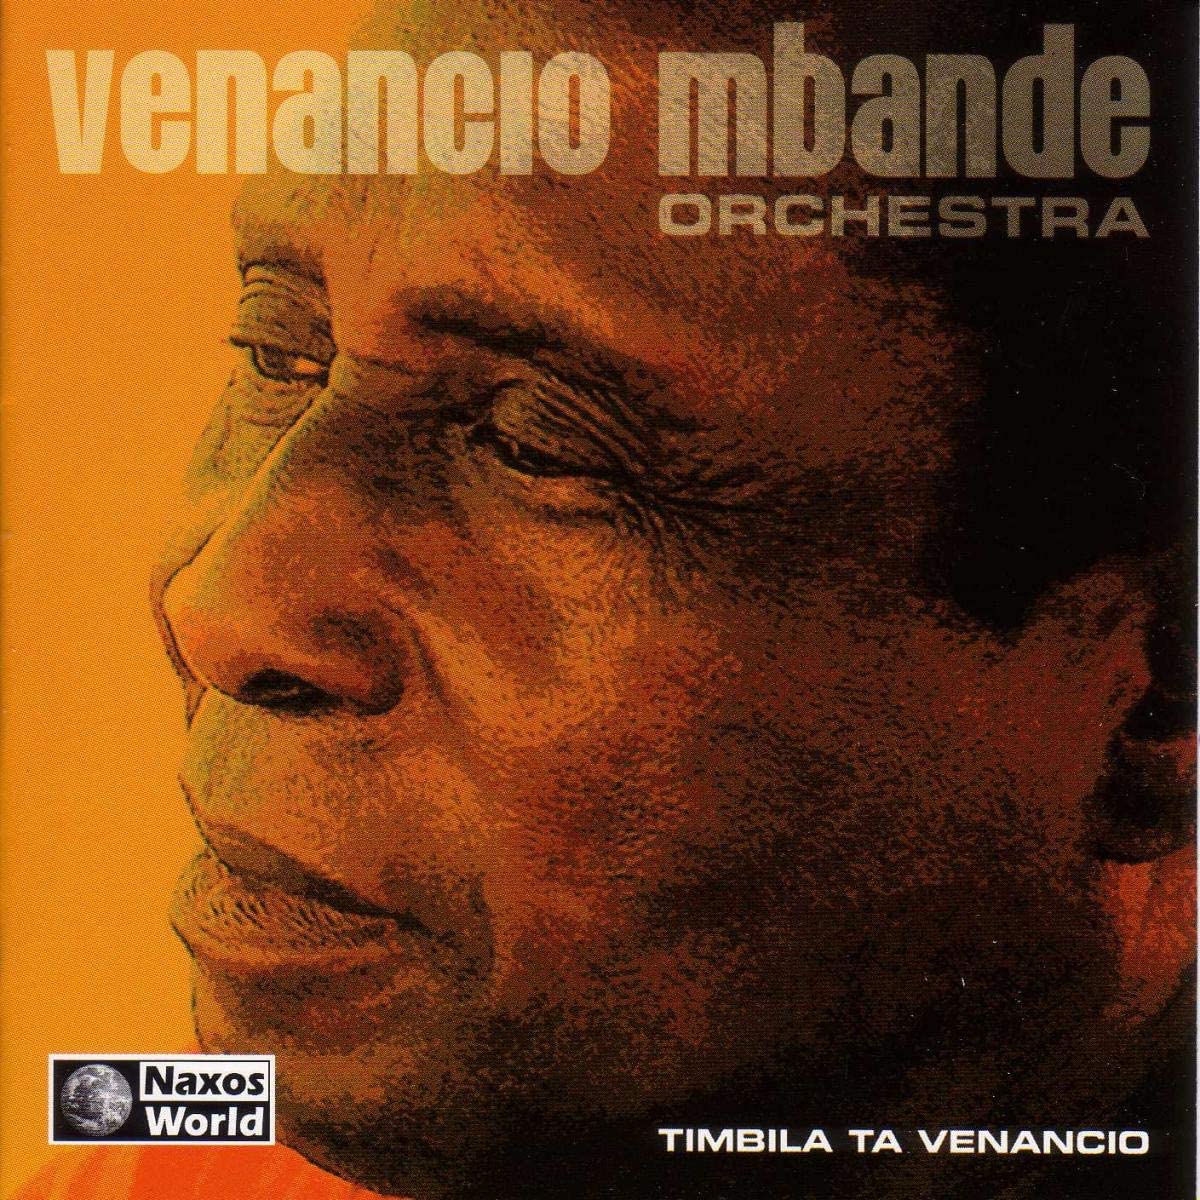 Venancio M'Bande Orchestra: Timbila Ta Venancio